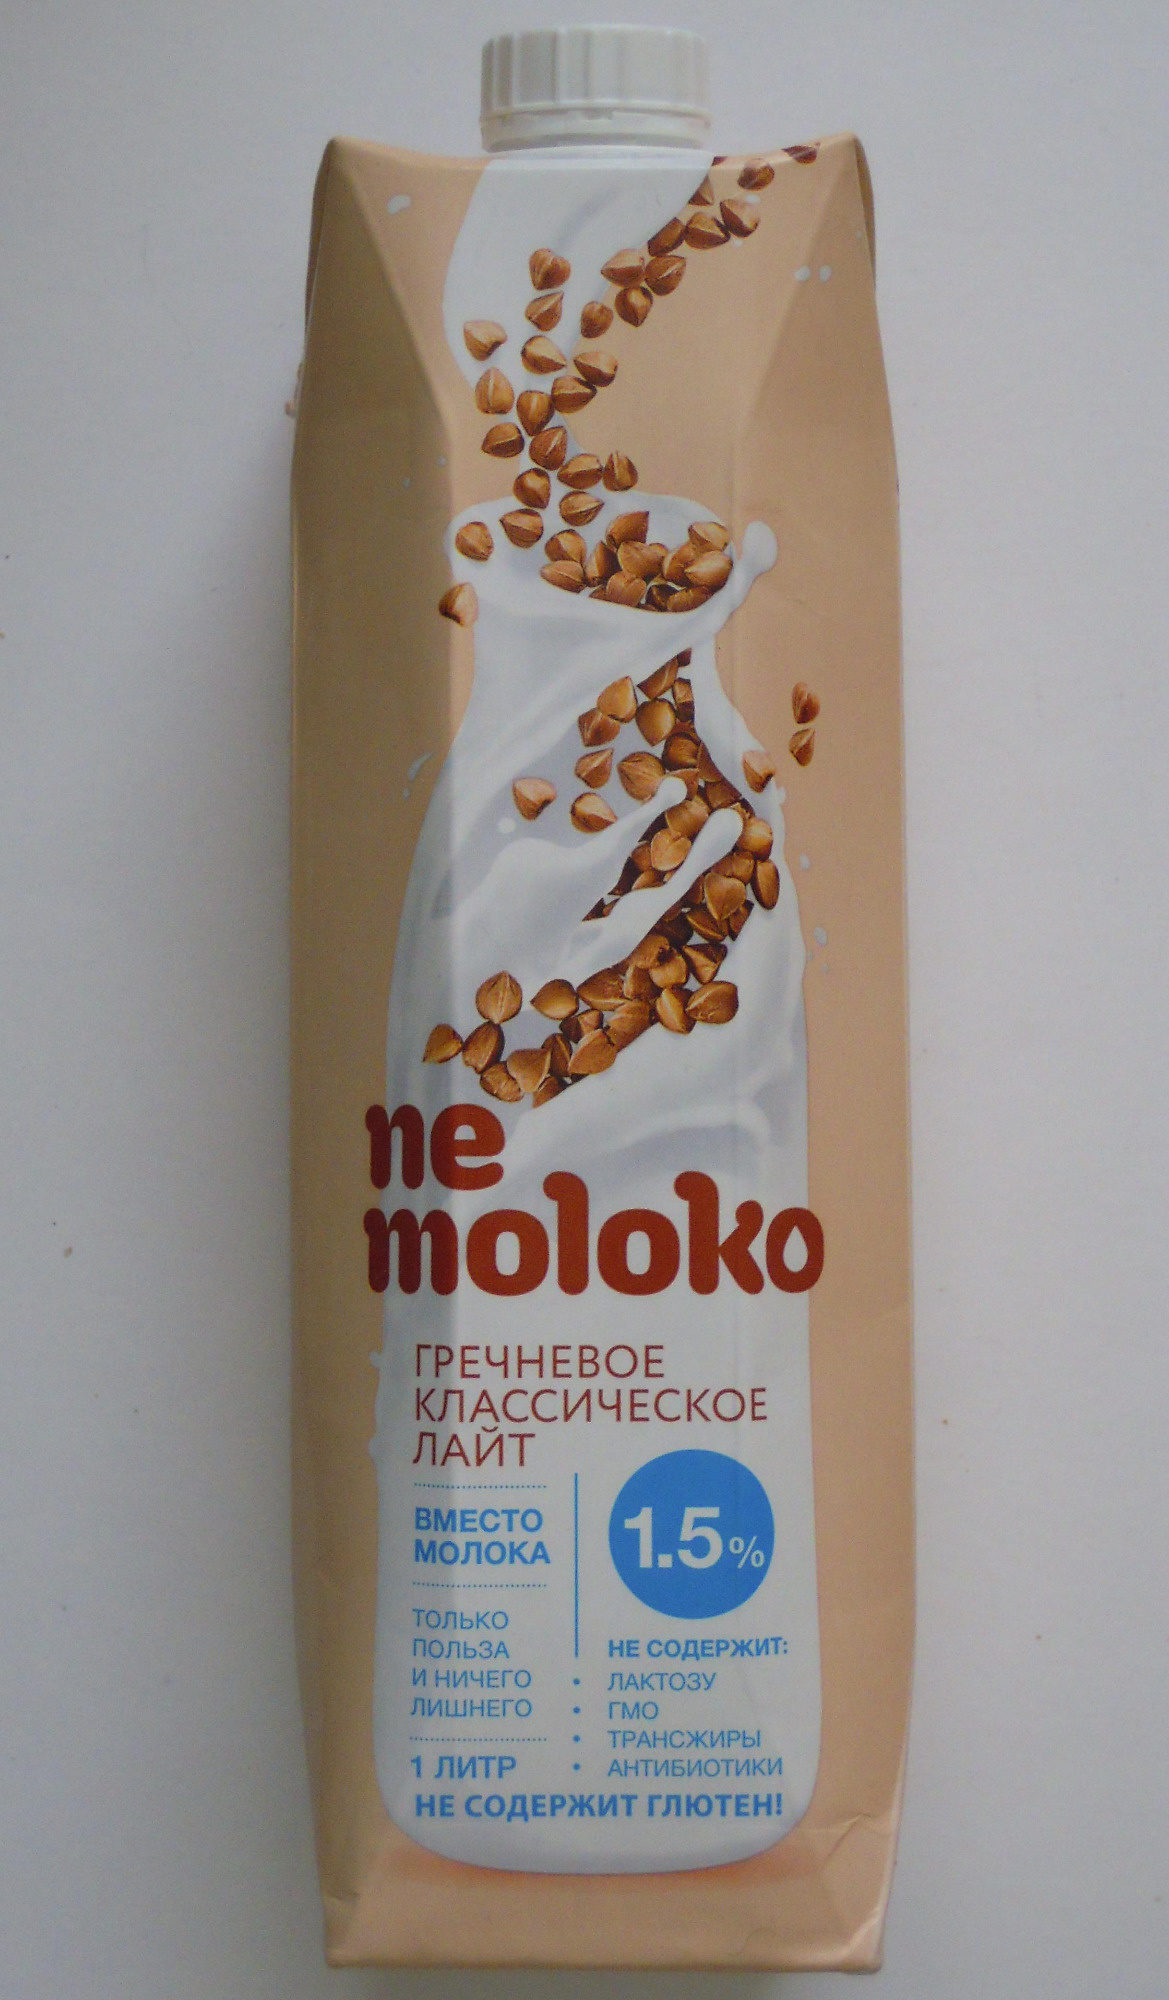 Nemoloko гречневое классическое лайт 1,5 % - Product - ru